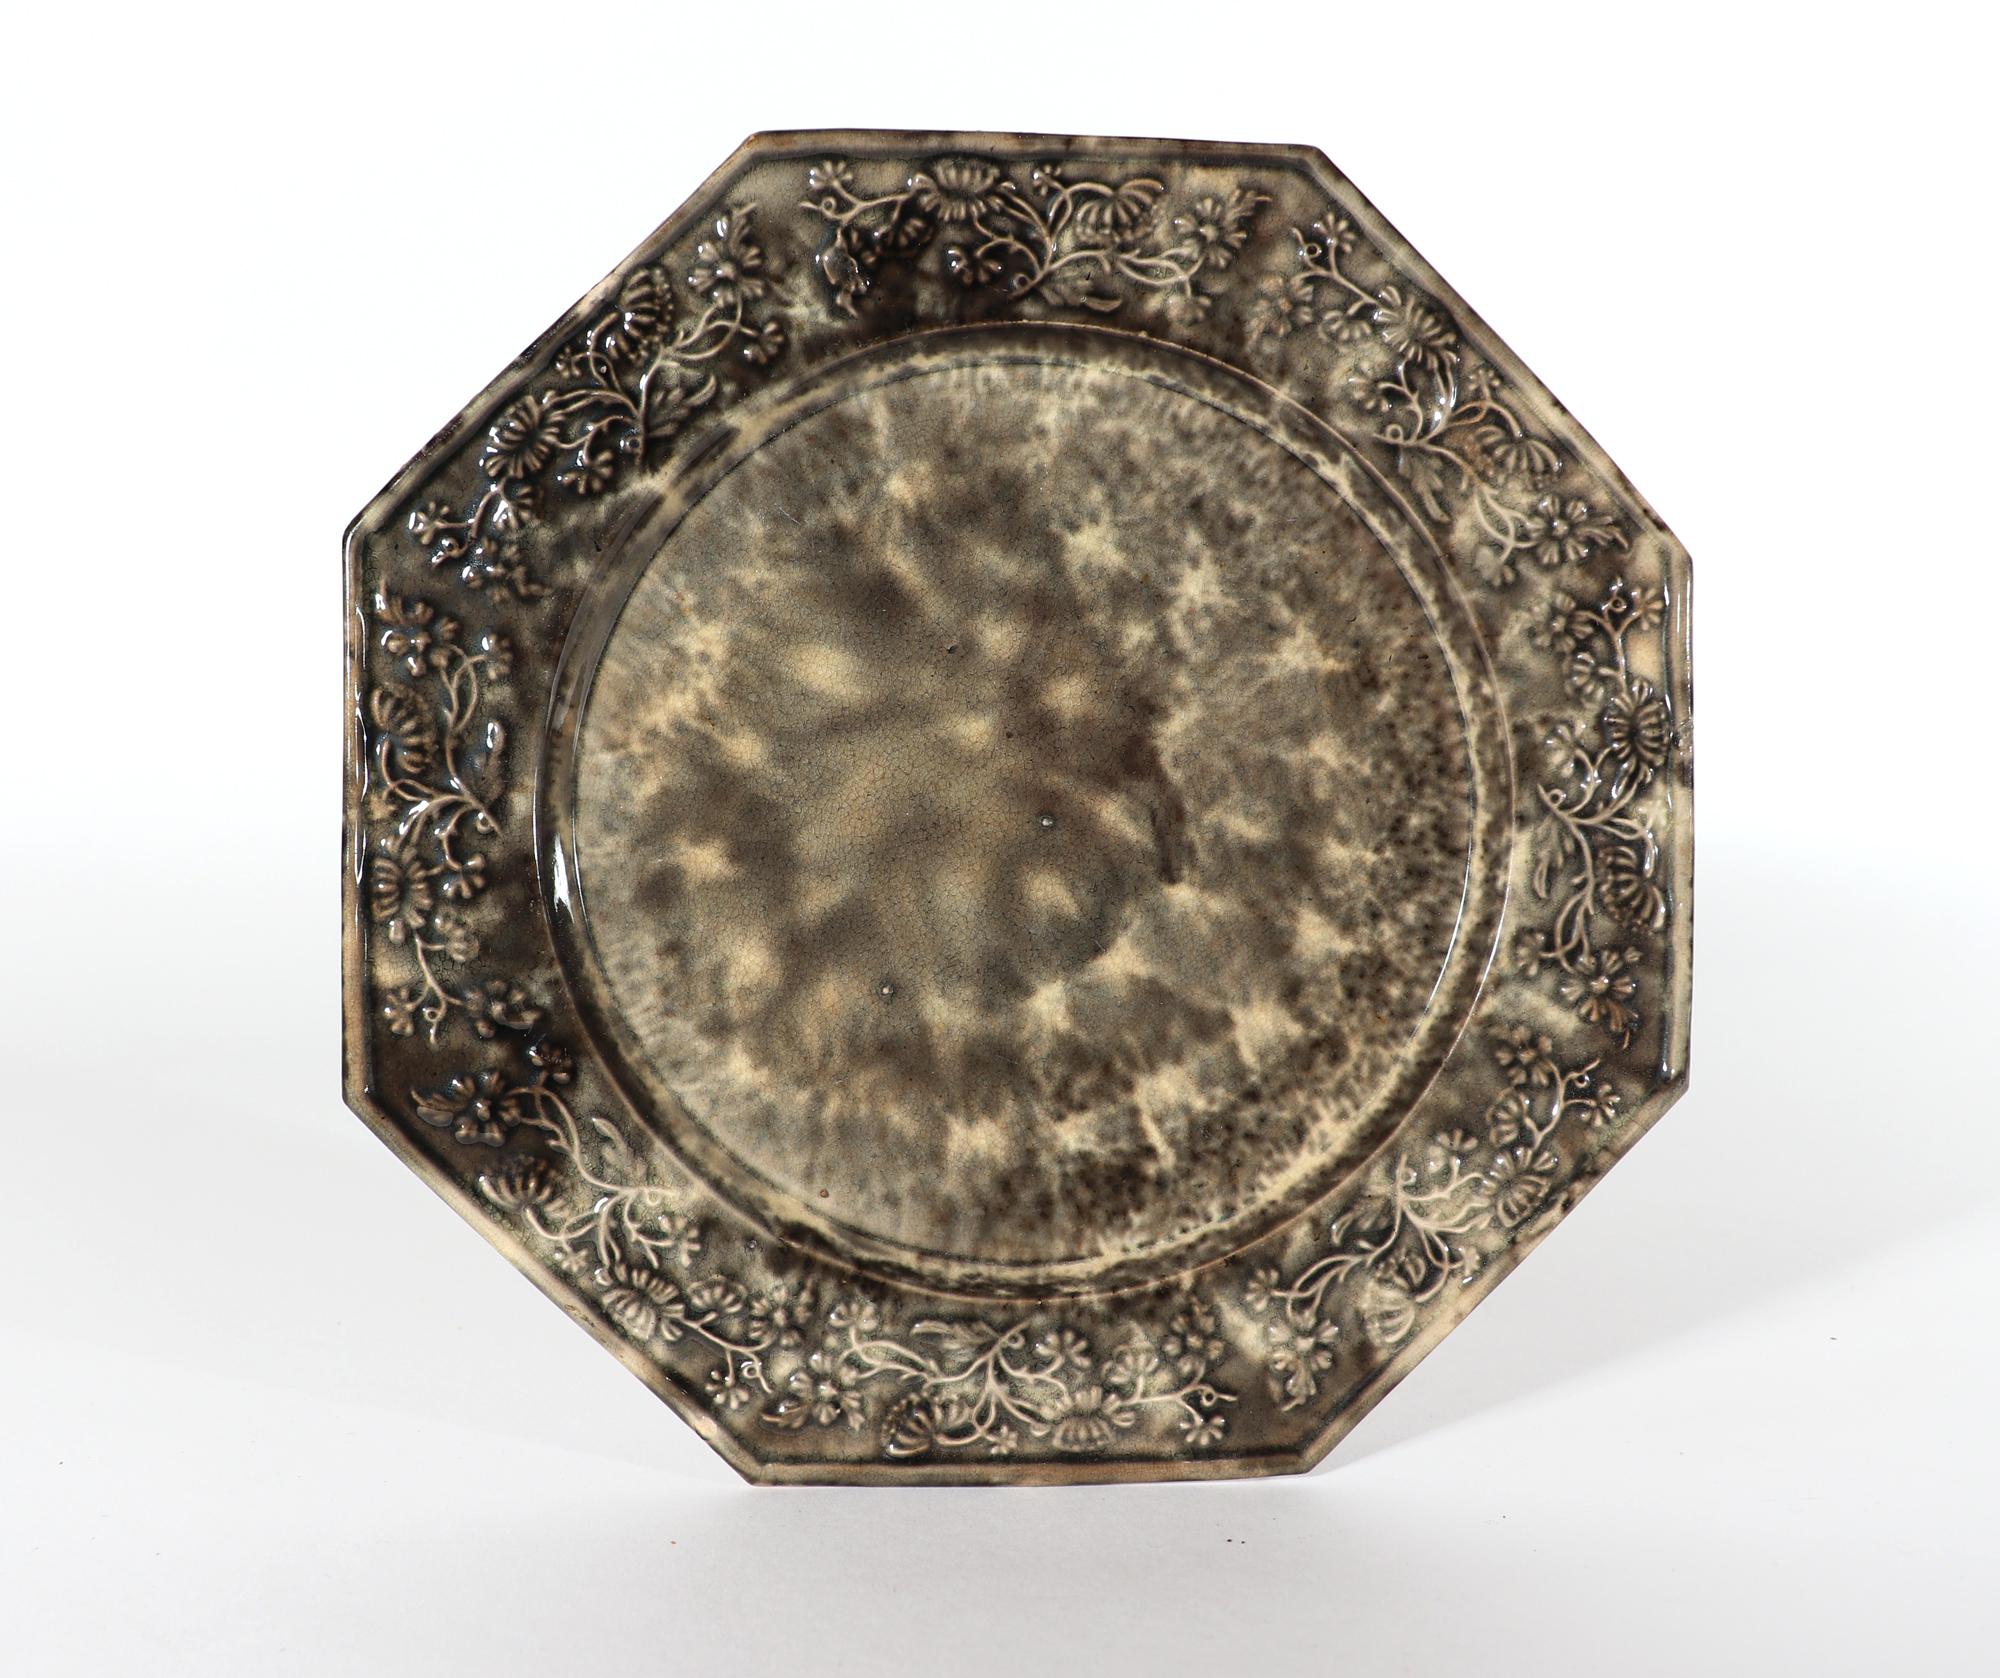 Englischer Cremeteller vom Typ Whieldon, grau, schildpatt,
CIRCA 1765-75

Die achteckige Platte ist auf der Vorder- und Rückseite mit einem sehr ansprechenden grauen Schildpattmuster bedeckt.  Der Rand ist erhöht und die Umrandung hat ein